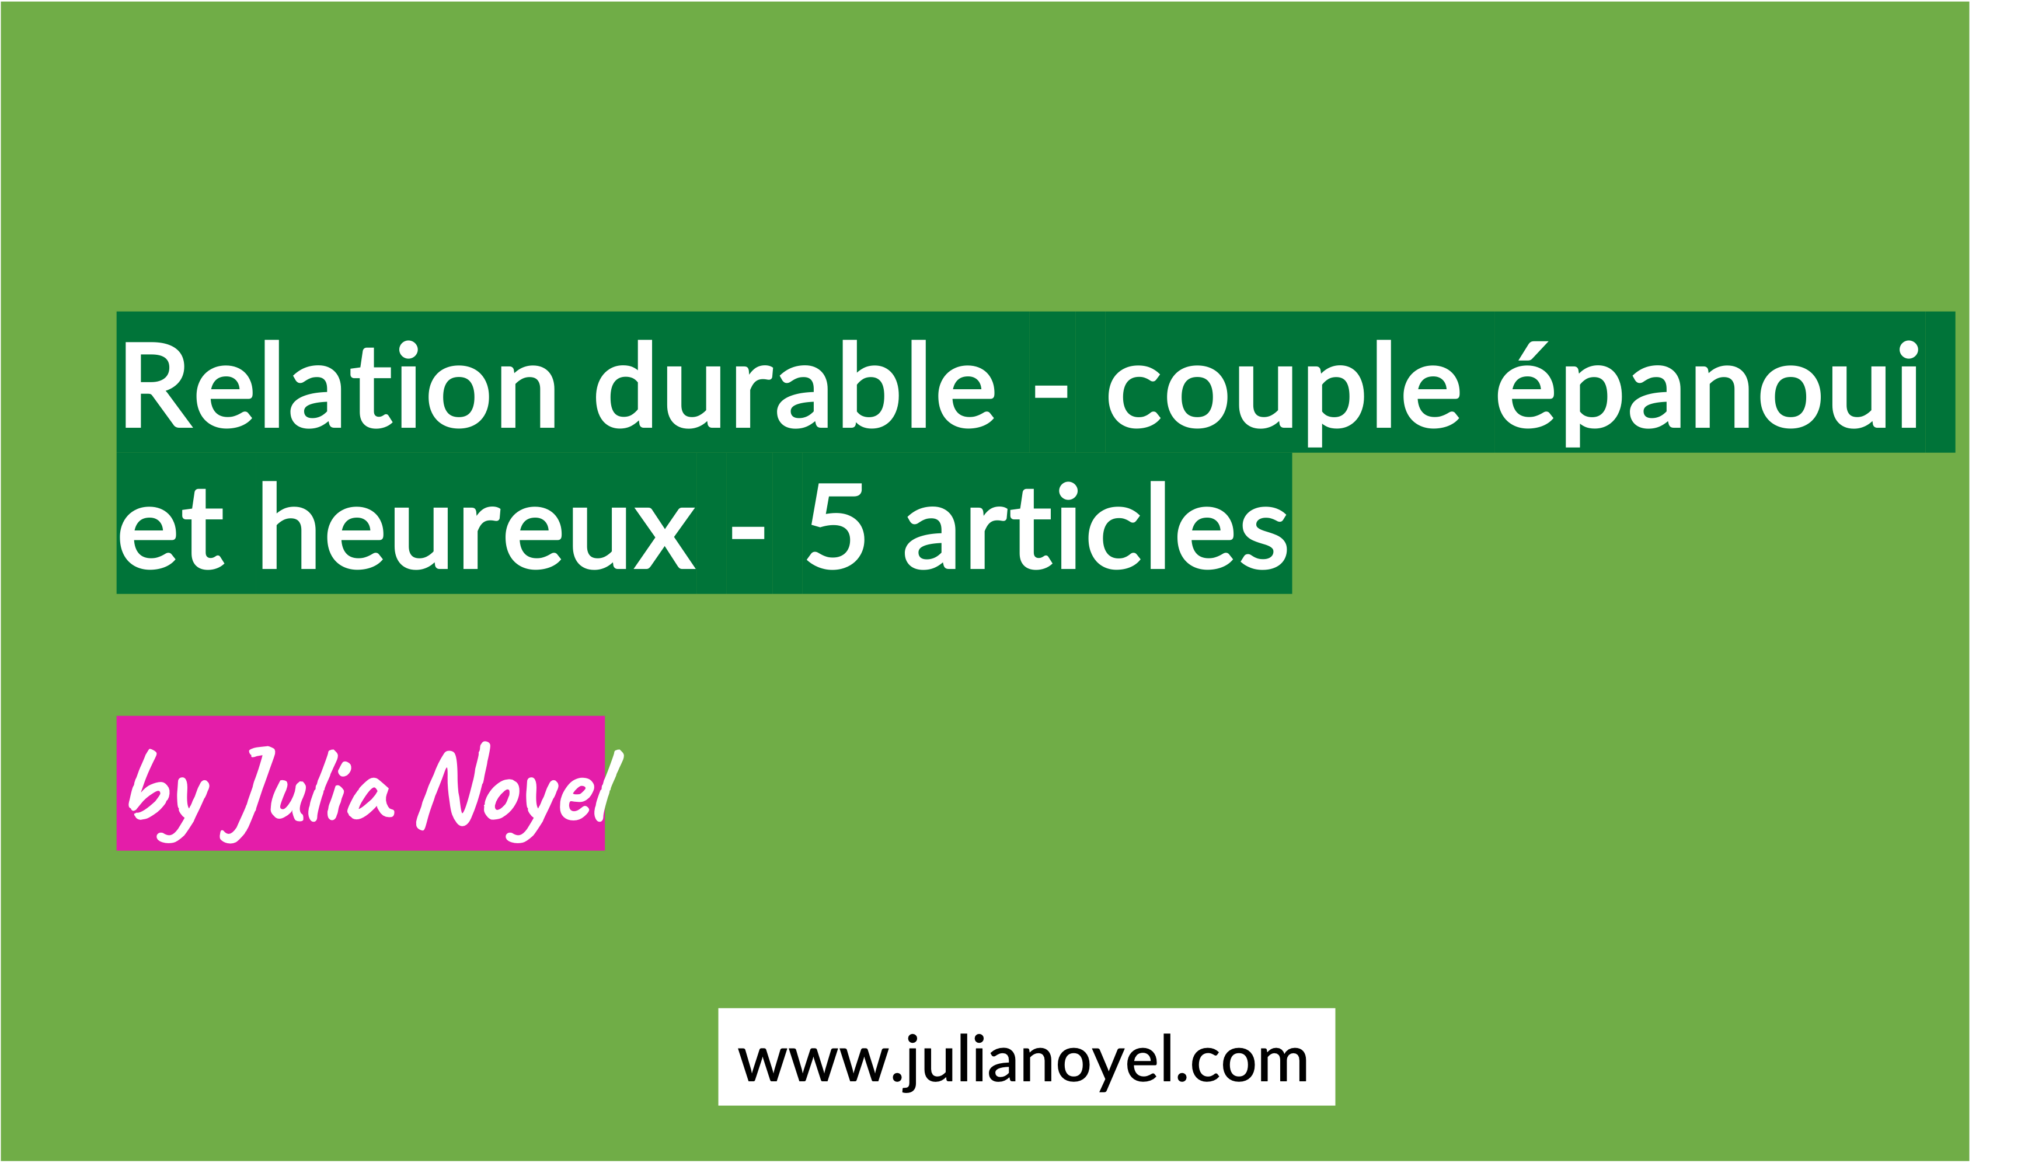 Relation durable - couple épanoui et heureux - 5 articles by Julia Noyel